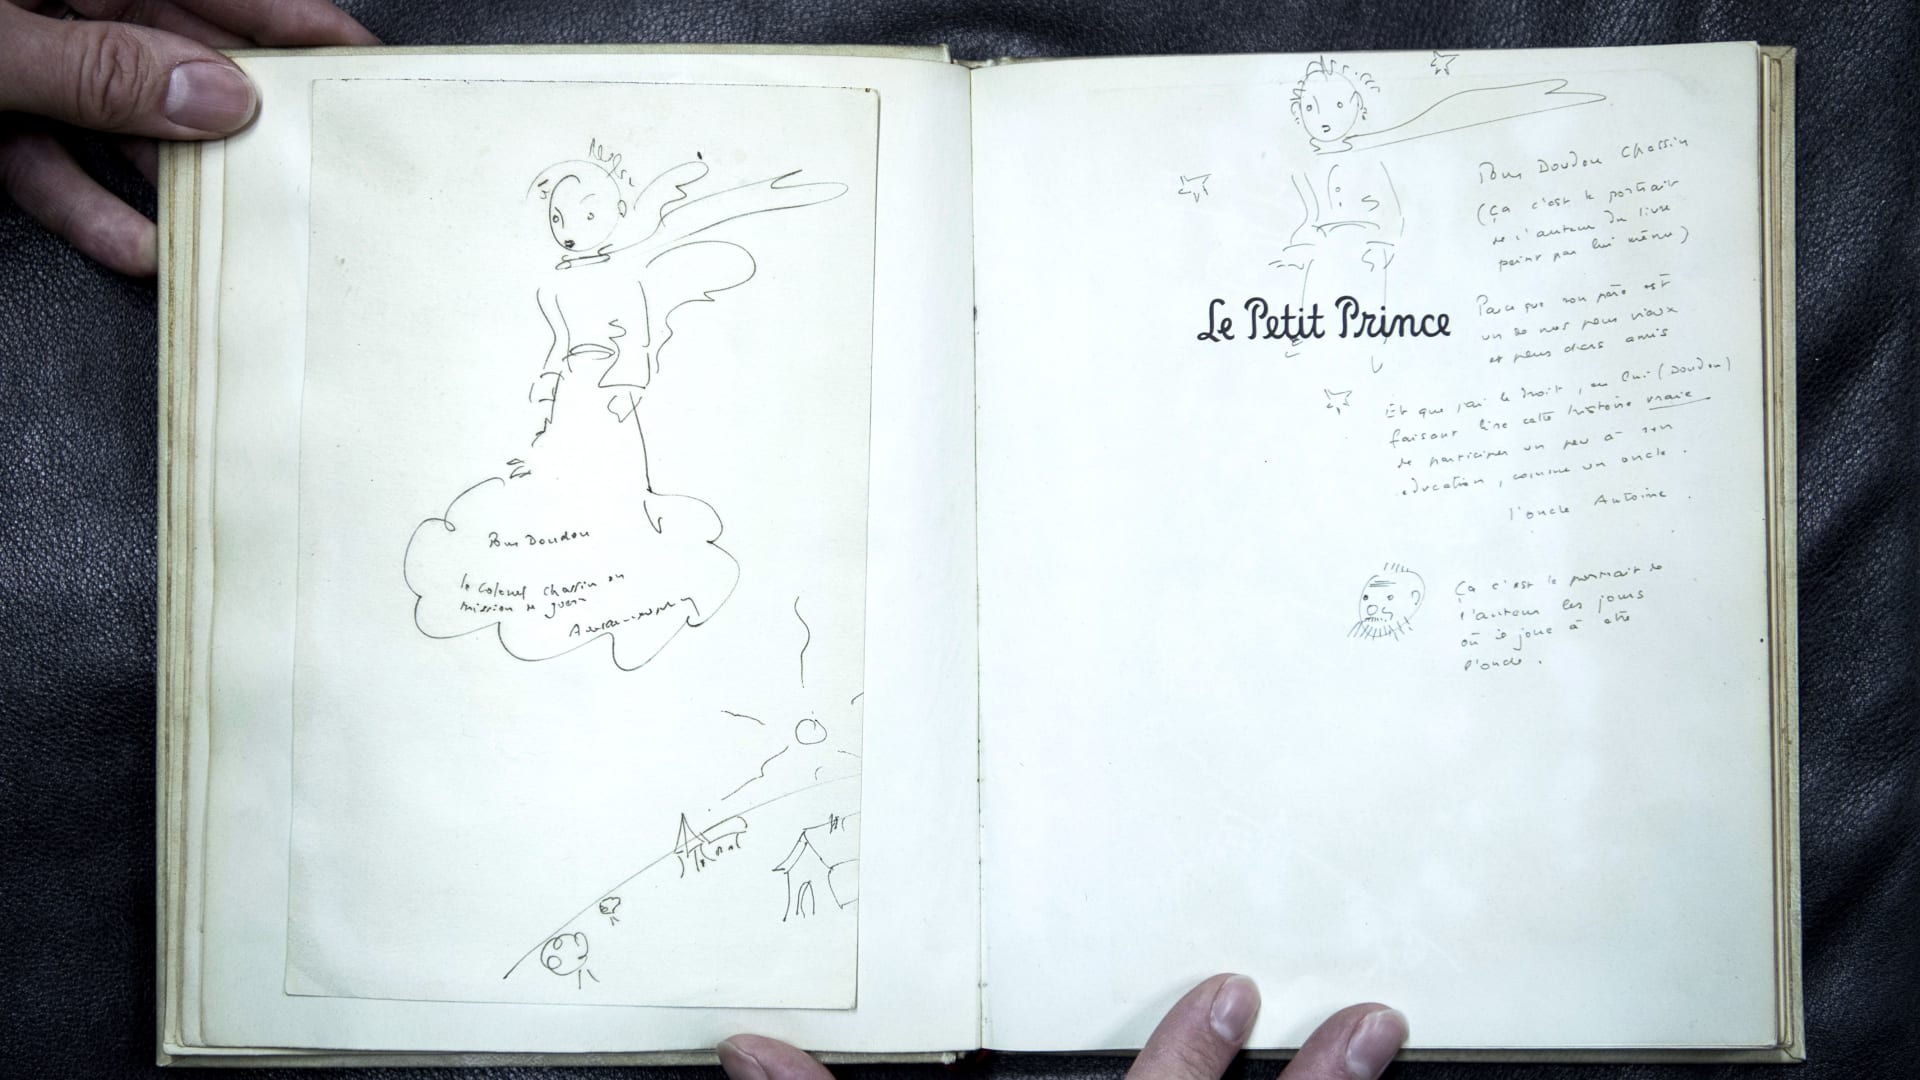 مخطوطة رواية "الأمير الصغير" الأصلية تعود إلى وطنها.. بعد 8 عقود! 